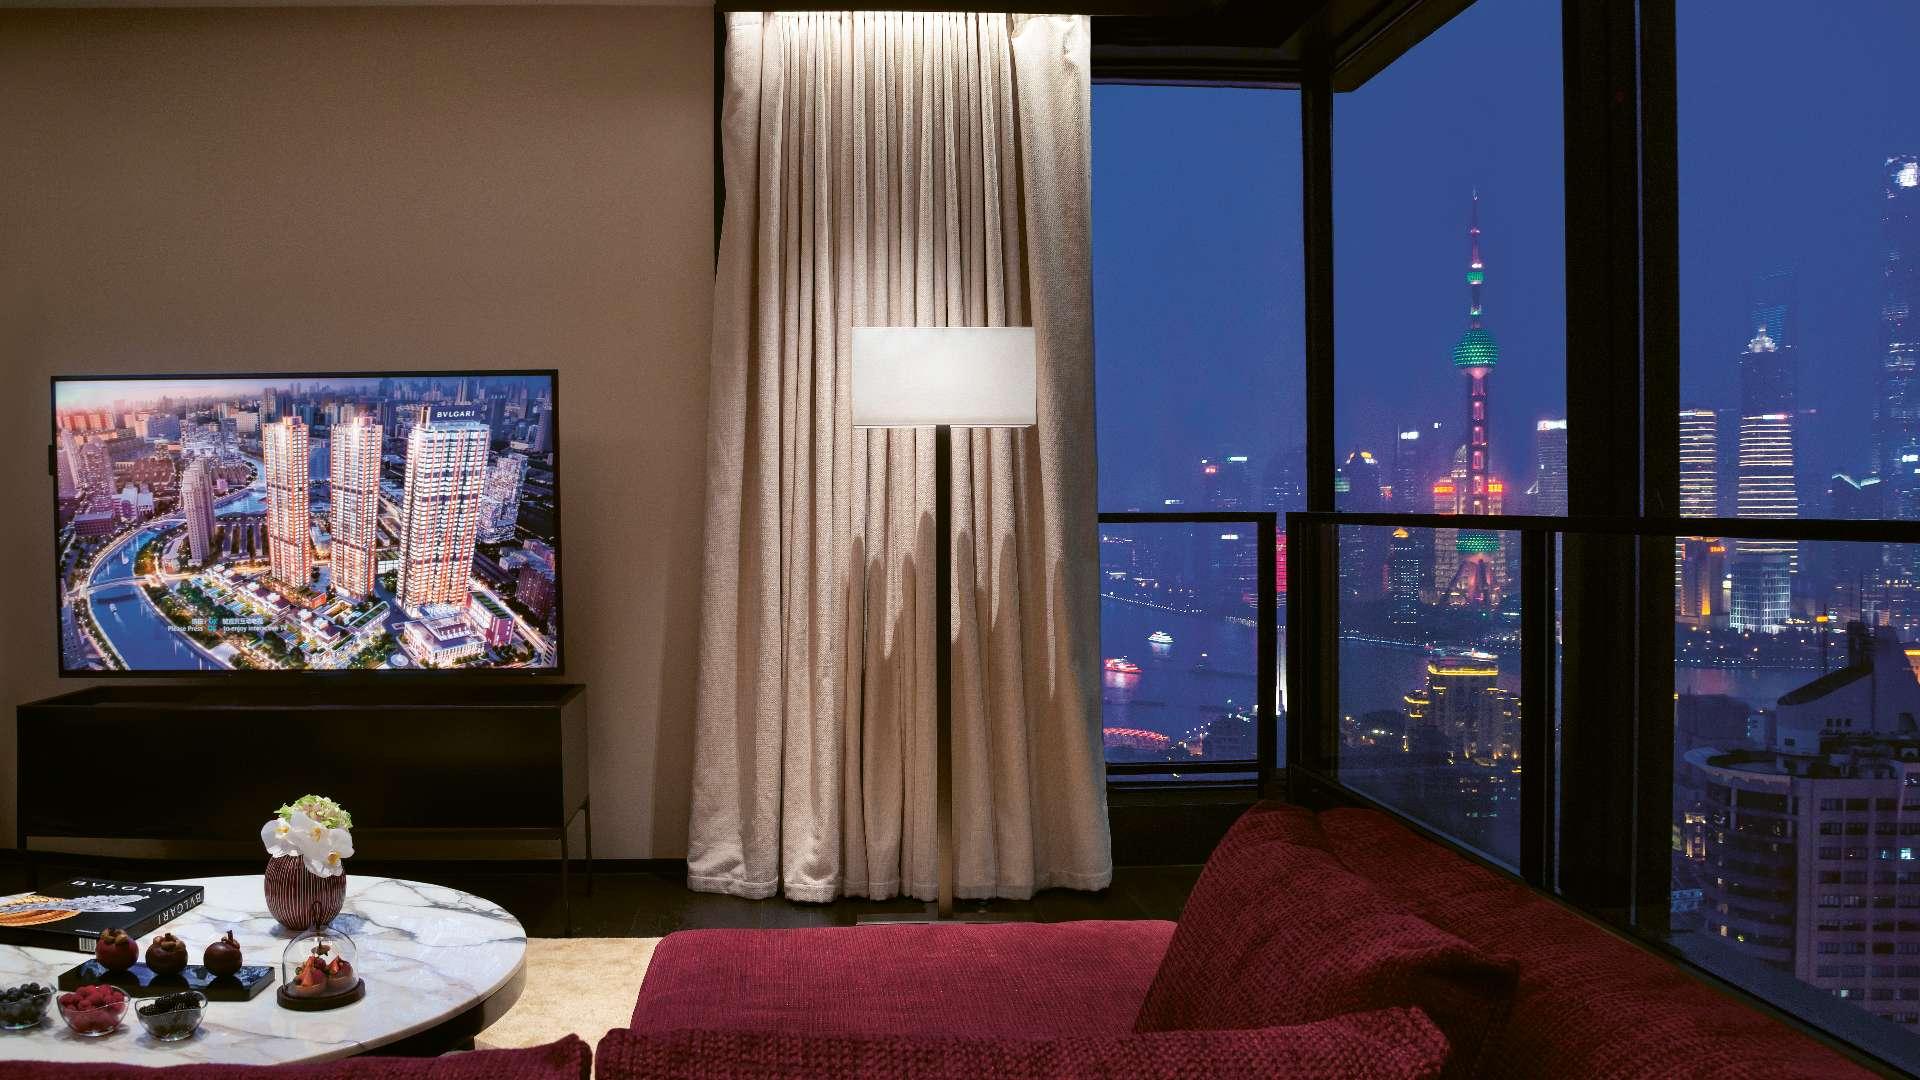 【意大利設計x中國傳奇】上海BVLGARI酒店  融合中西文化輝煌